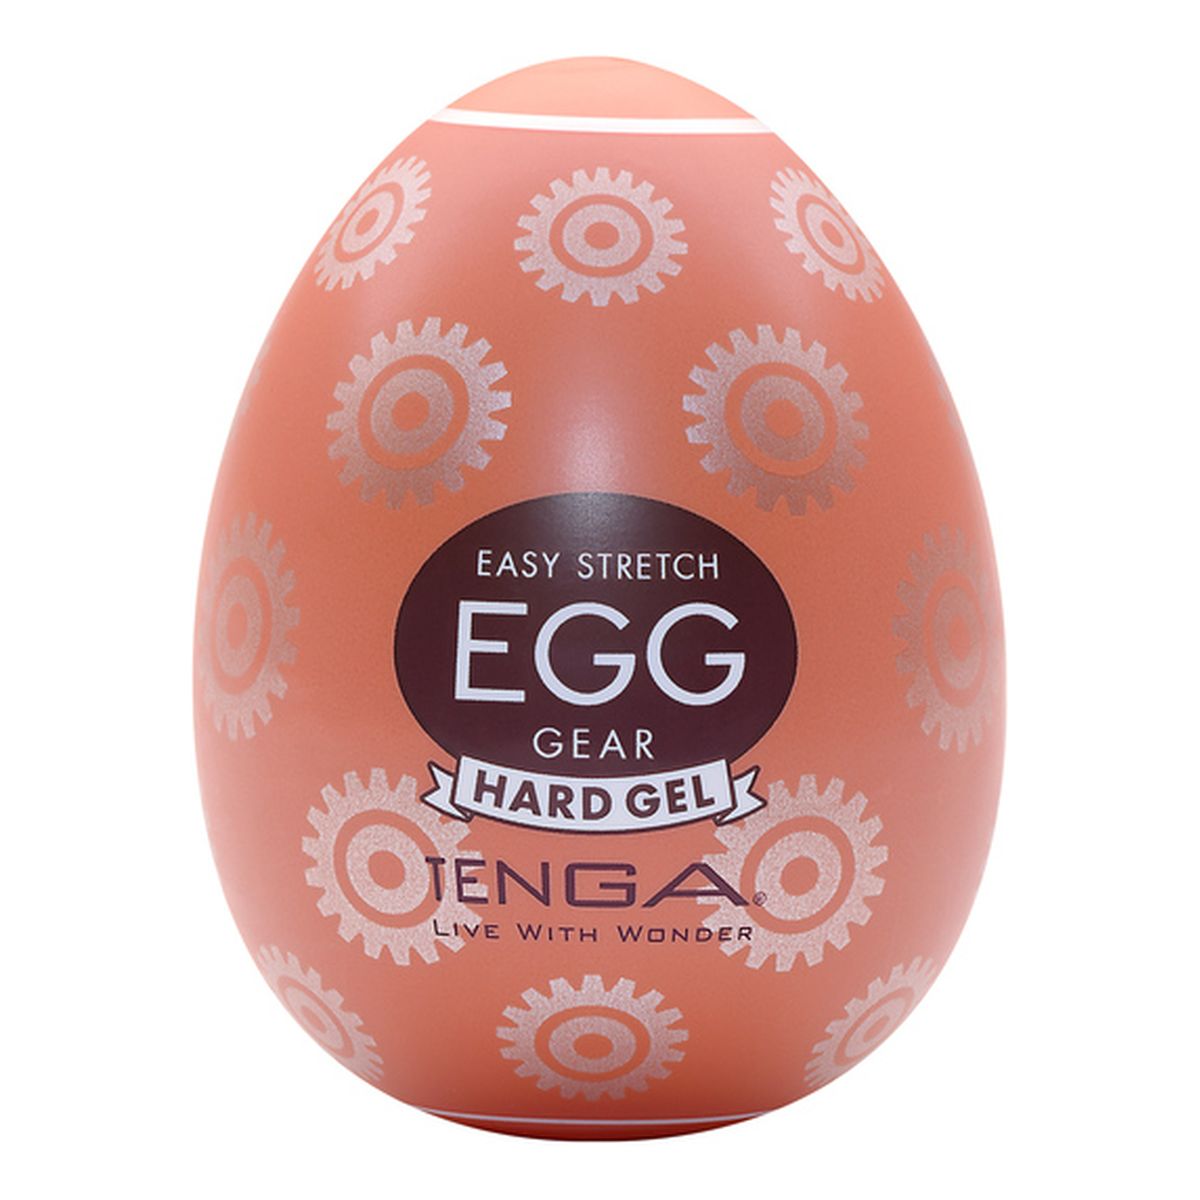 Tenga Easy stetch egg gear jednorazowy masturbator w kształcie jajka